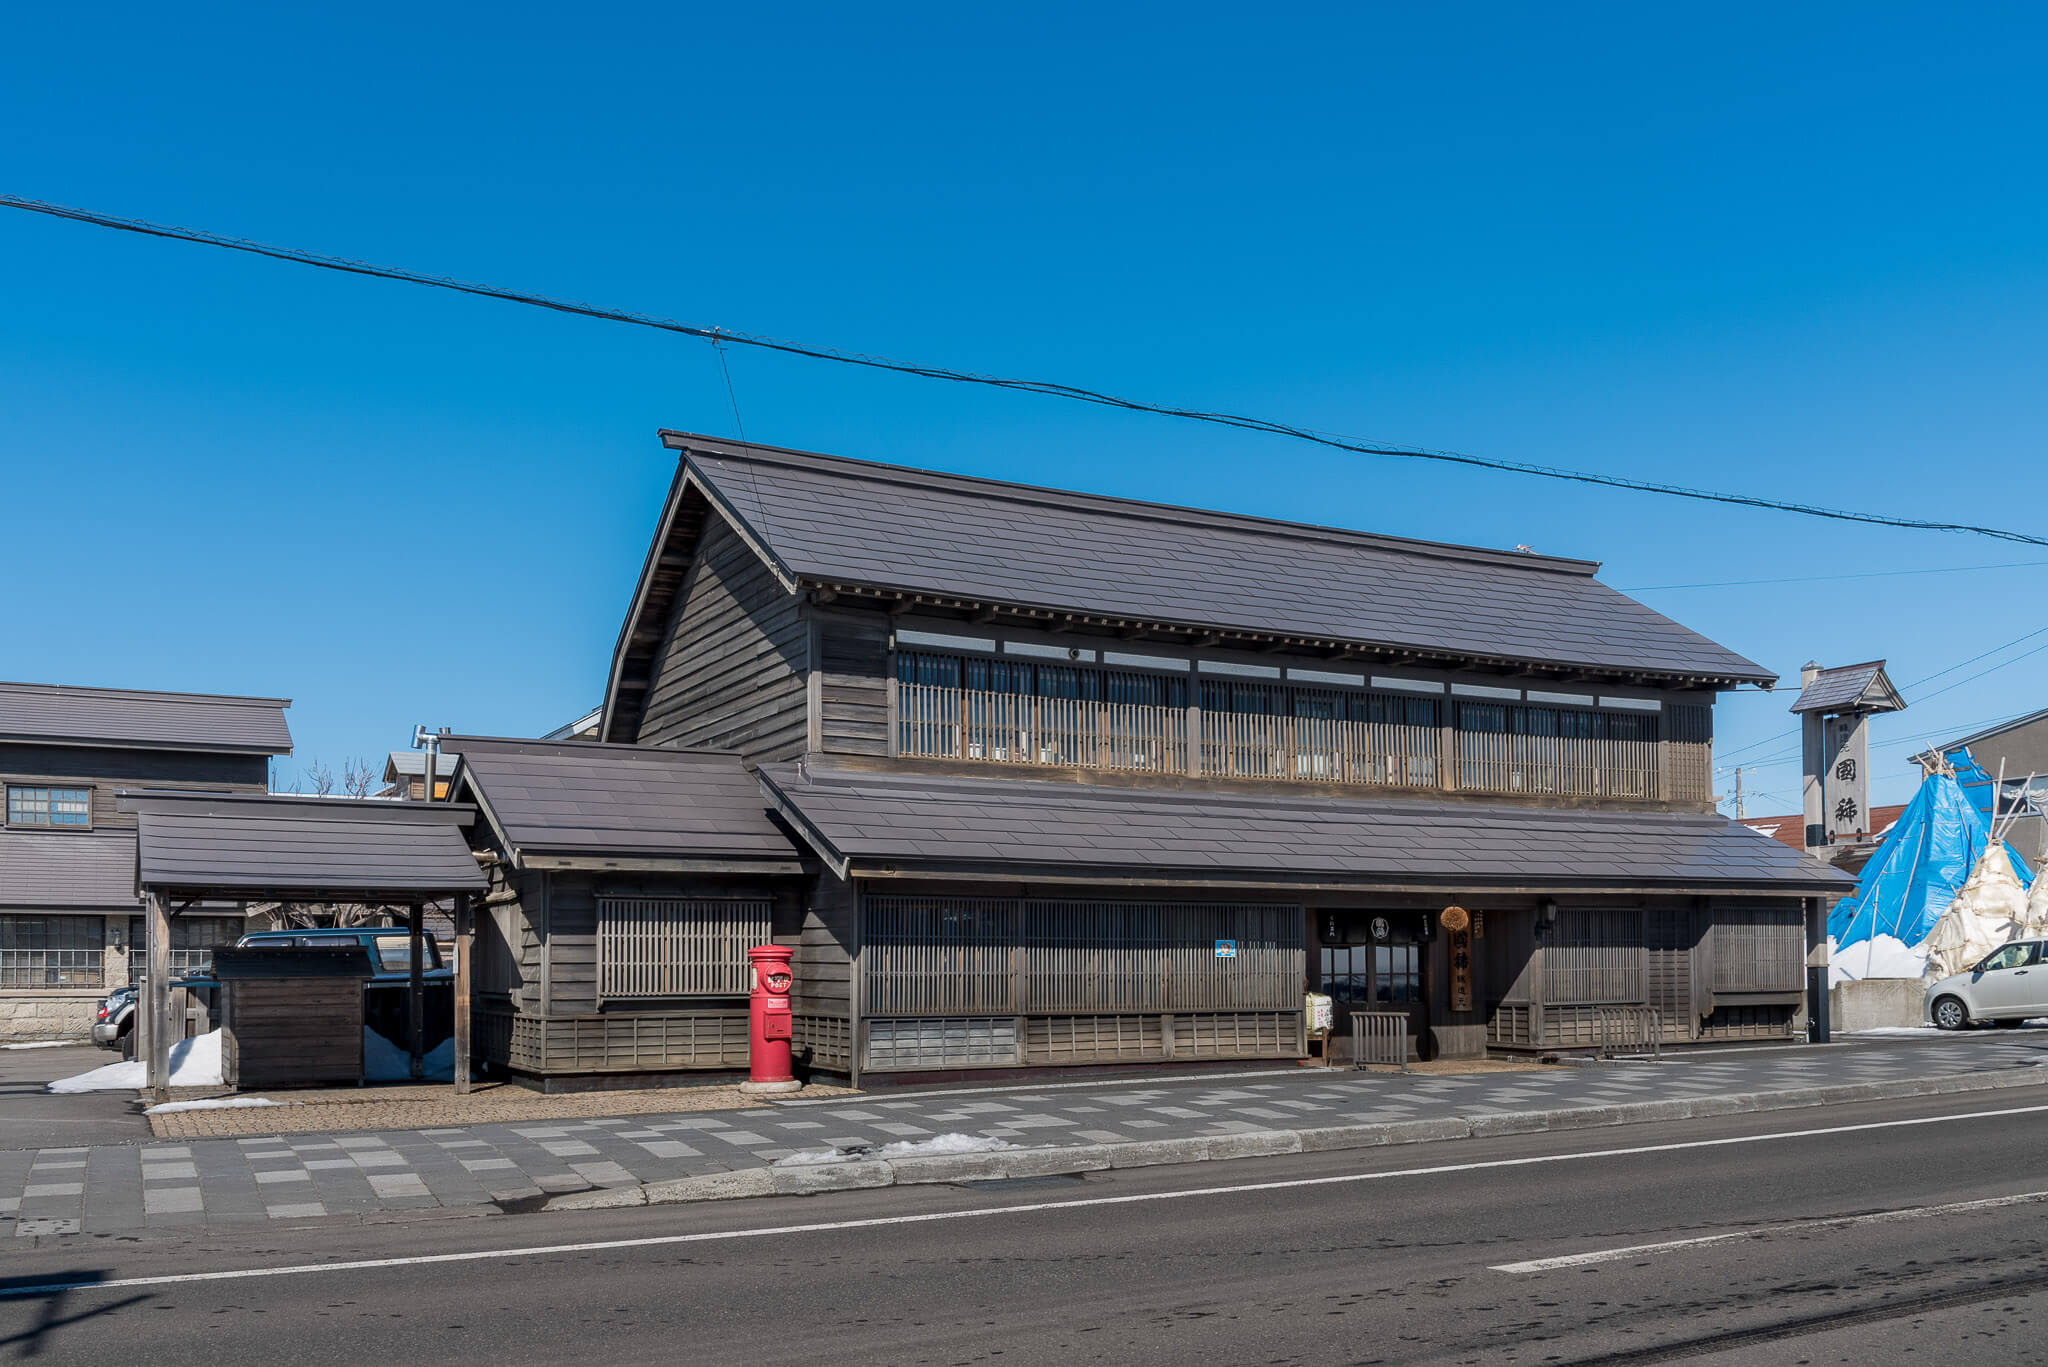 增毛的歷史建築物群 車站前的歷史建造物群與舊增毛小學 北海道官方旅遊網站hokkaido Love